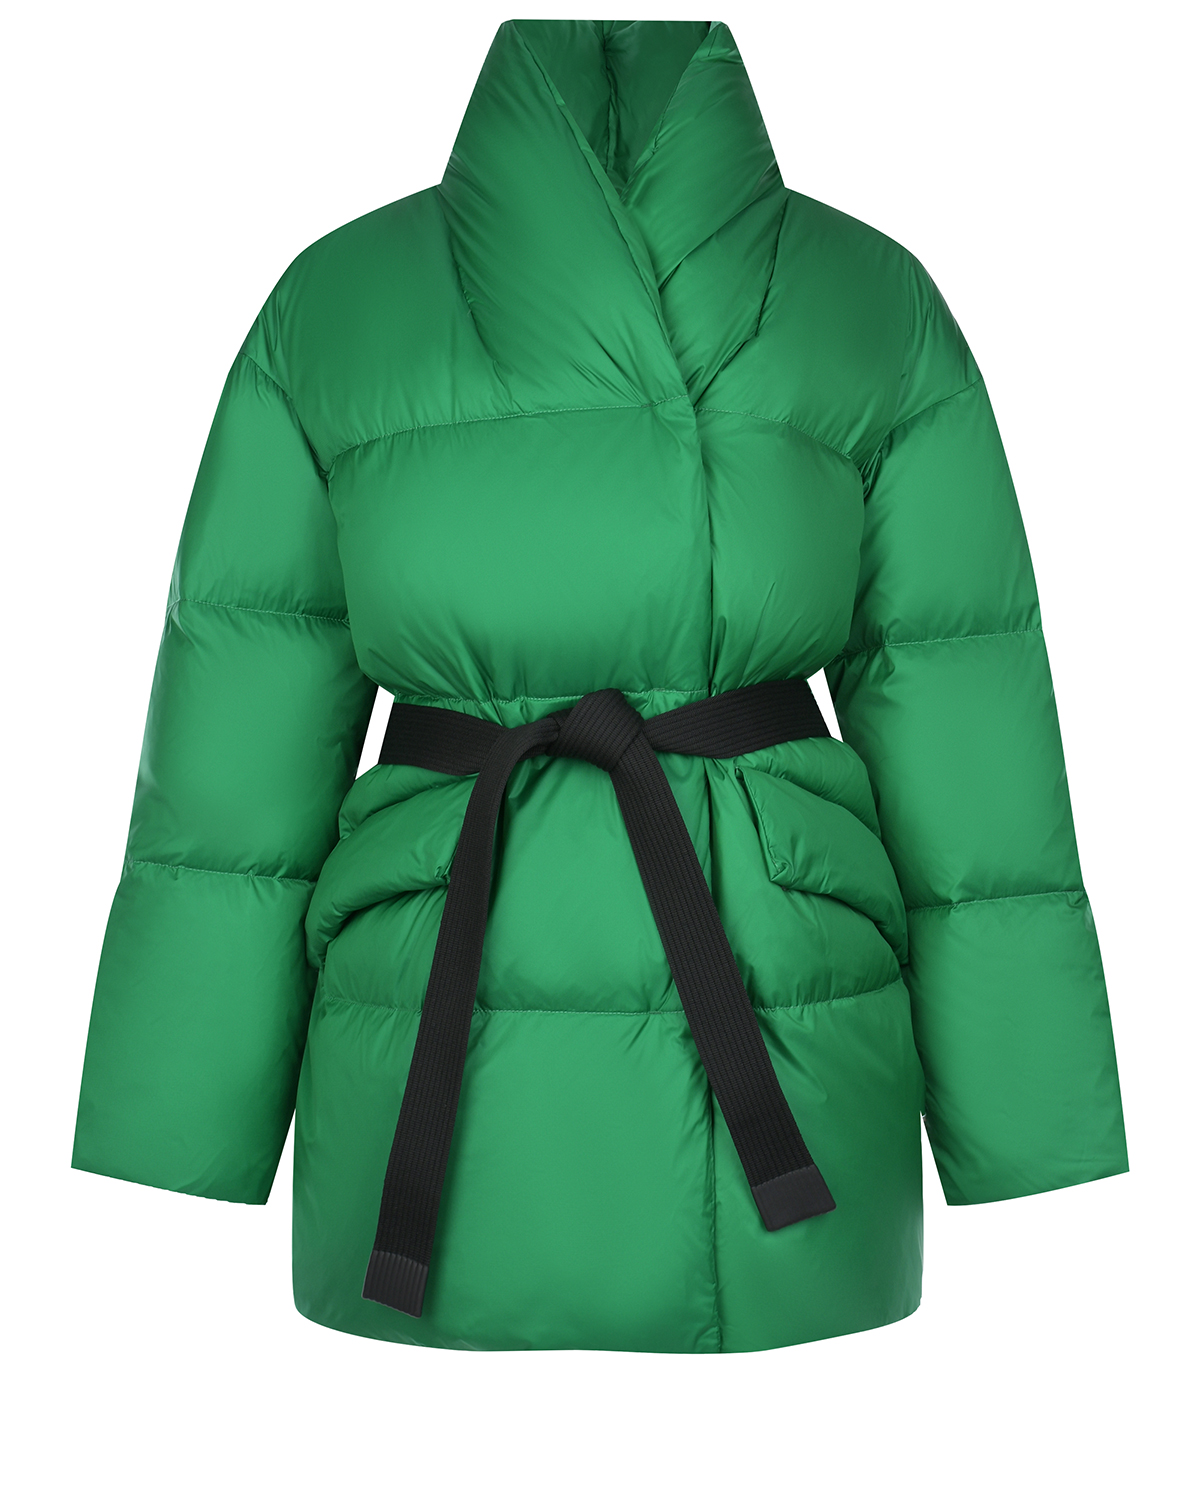 Зеленая куртка с черным поясом Naumi, размер 40, цвет зеленый